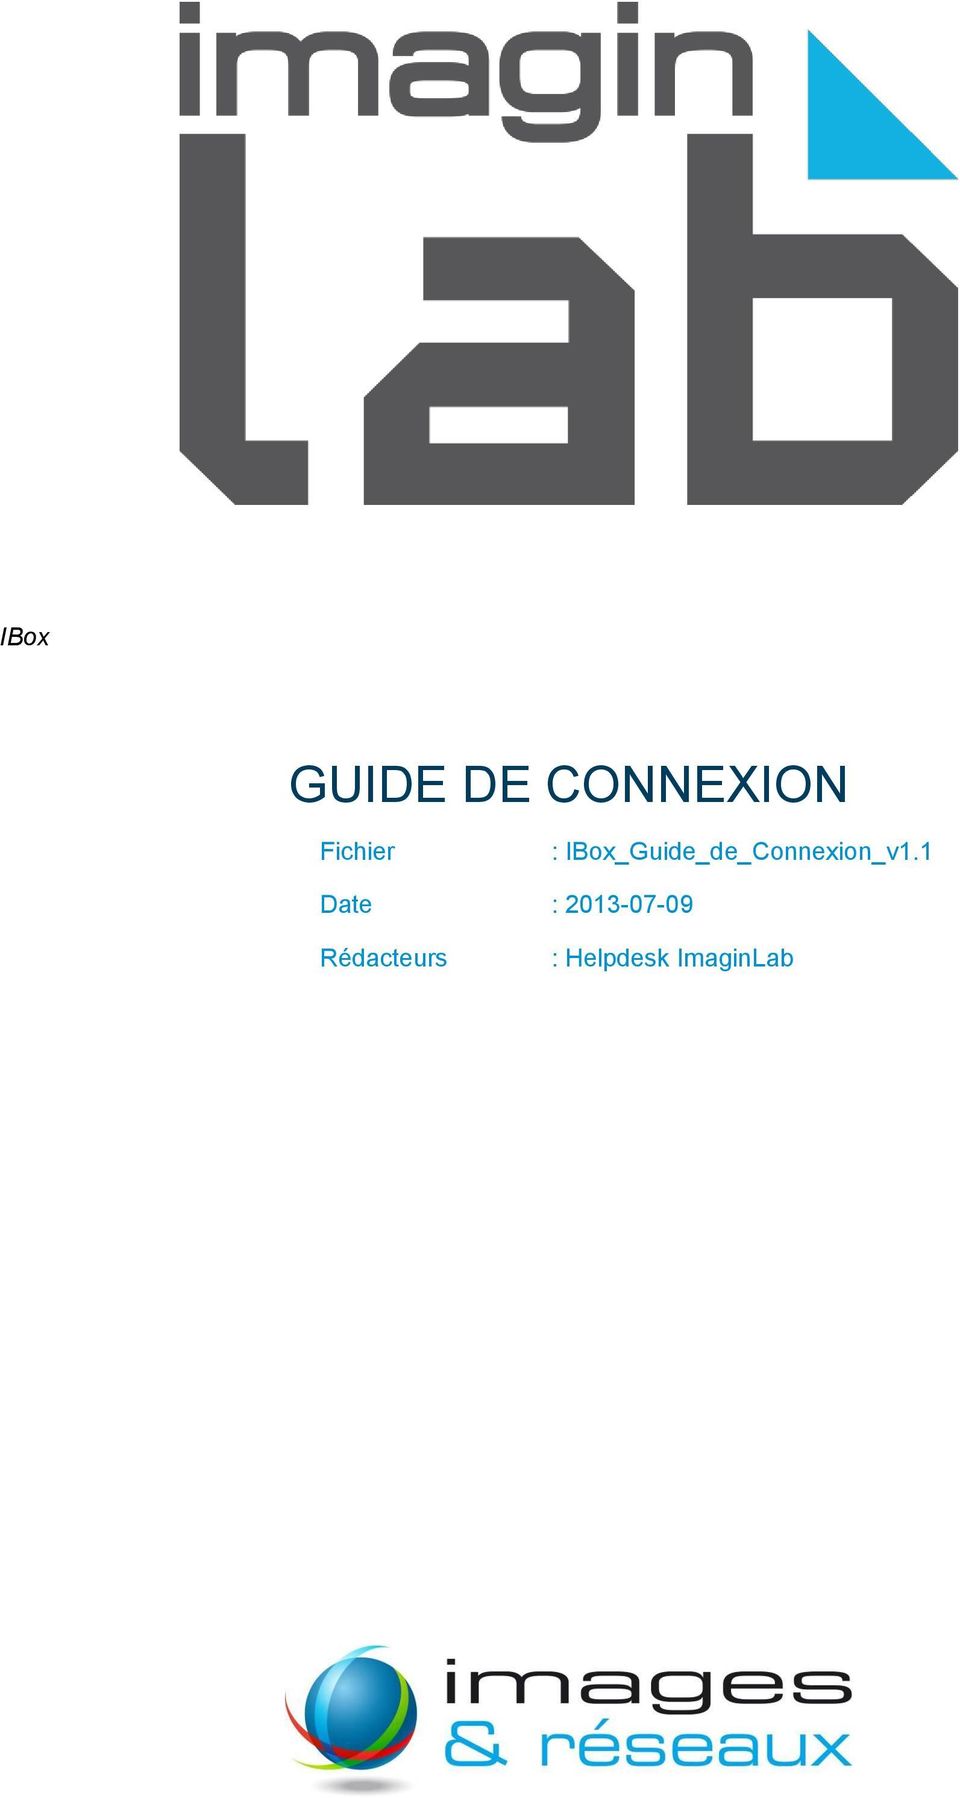 IBox_Guide_de_Connexion_v1.